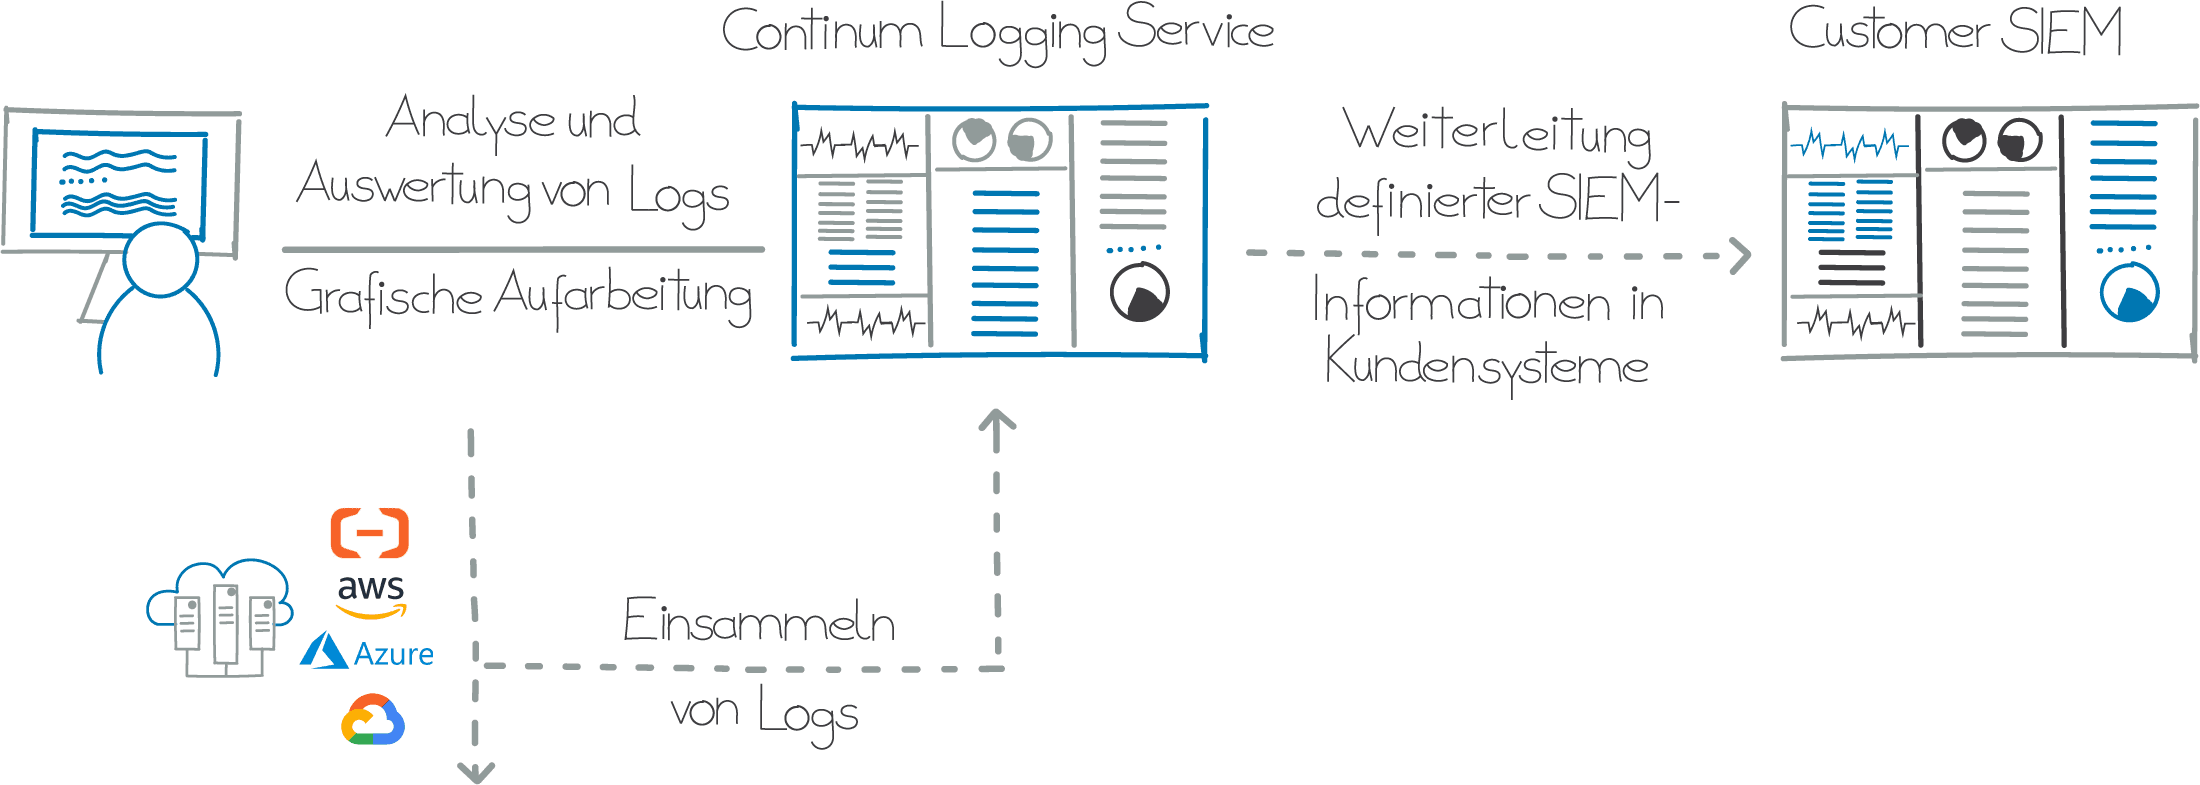 Schematische Darstellung des Continum Logging Service.